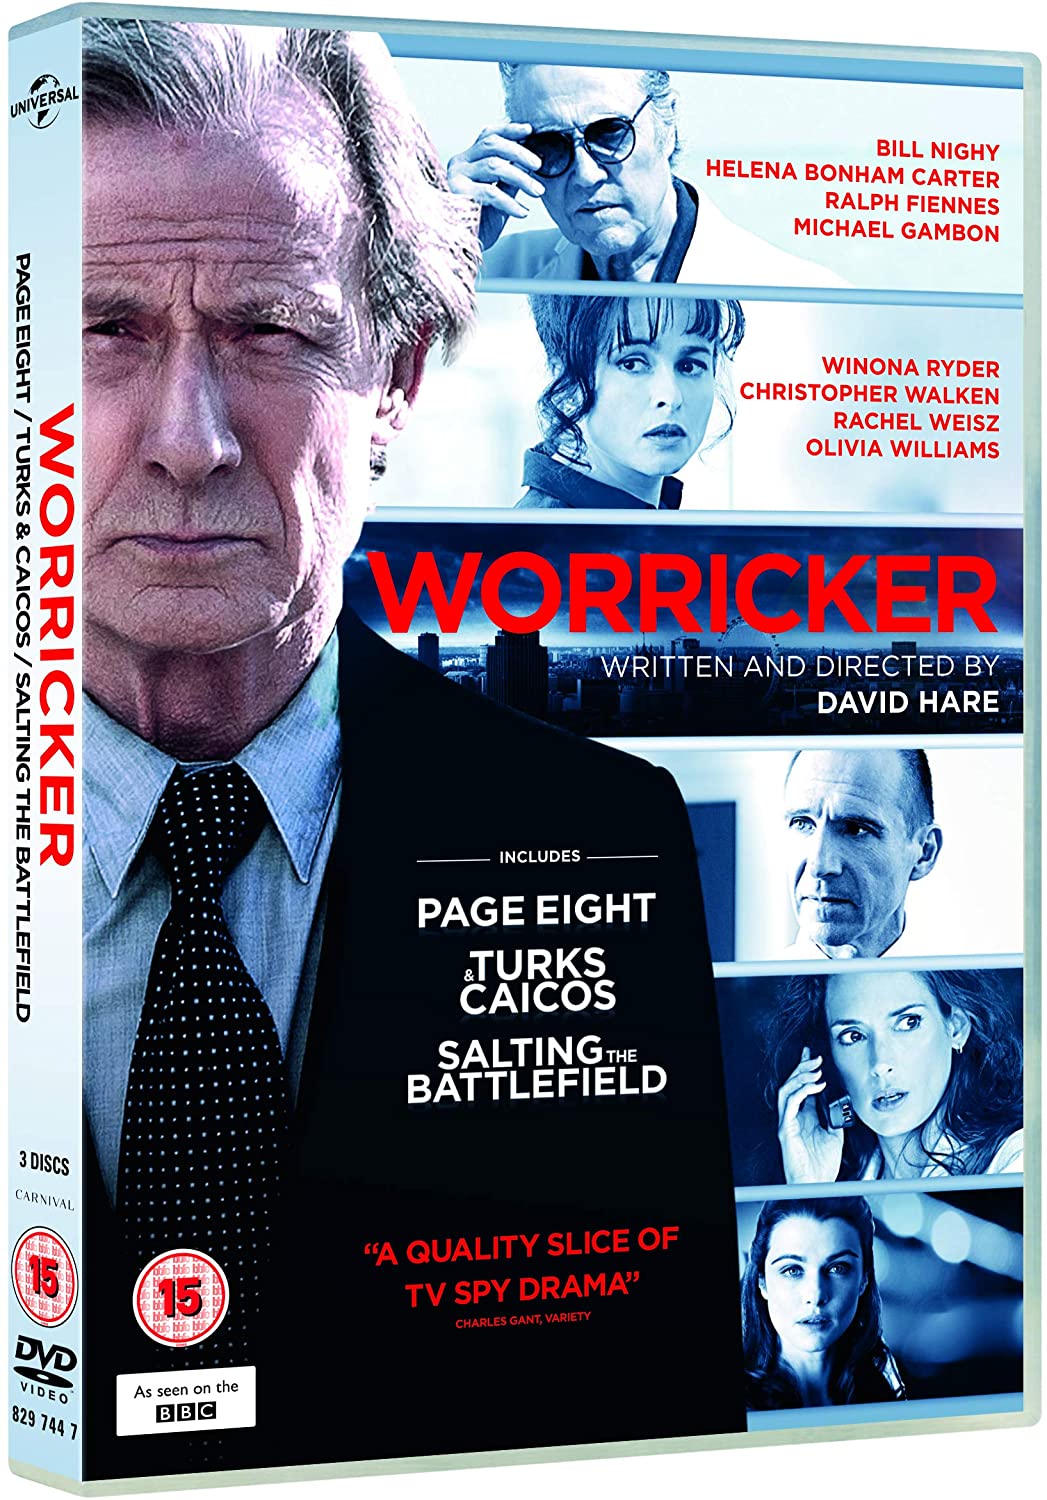 The Worricker Trilogy [2013] - Thriller/Drama [DVD]